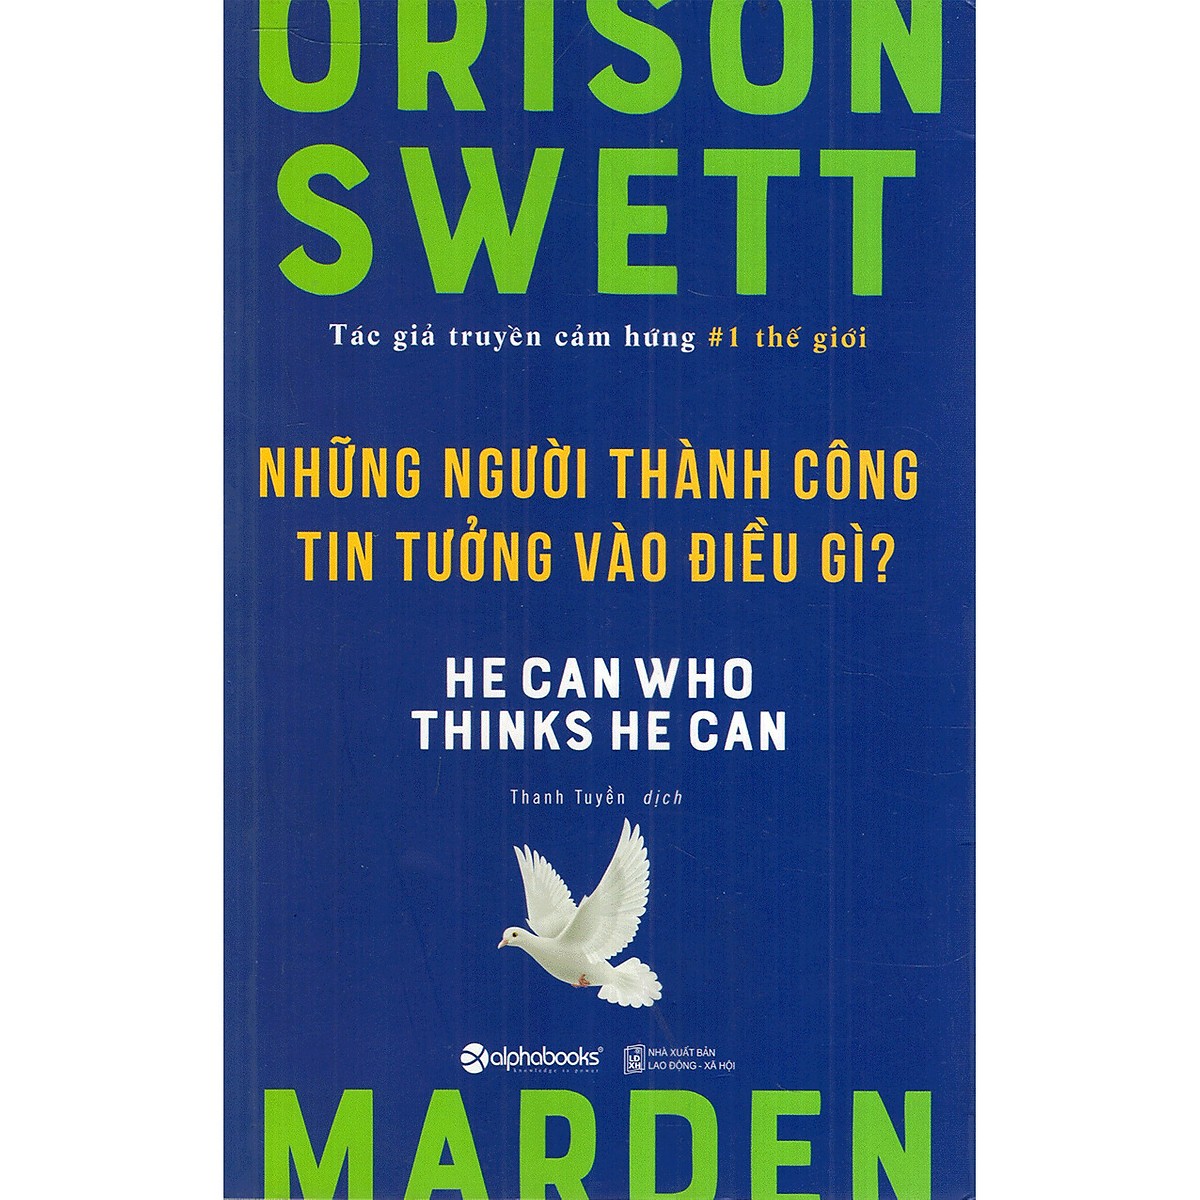 Bộ 3 Cuốn Sách Của Orison Swett Marden - Tác Giả Truyền Cảm Hứng Số 1 Thế Giới ( Nghệ Thuật “Bán Mình” Cho Sếp + Người Chọn Nghề Hay Nghề Chọn Người + Những Người Thành Công Tin Tưởng Vào Điều Gì? ) Quà Tặng: Cây Viết Galaxy